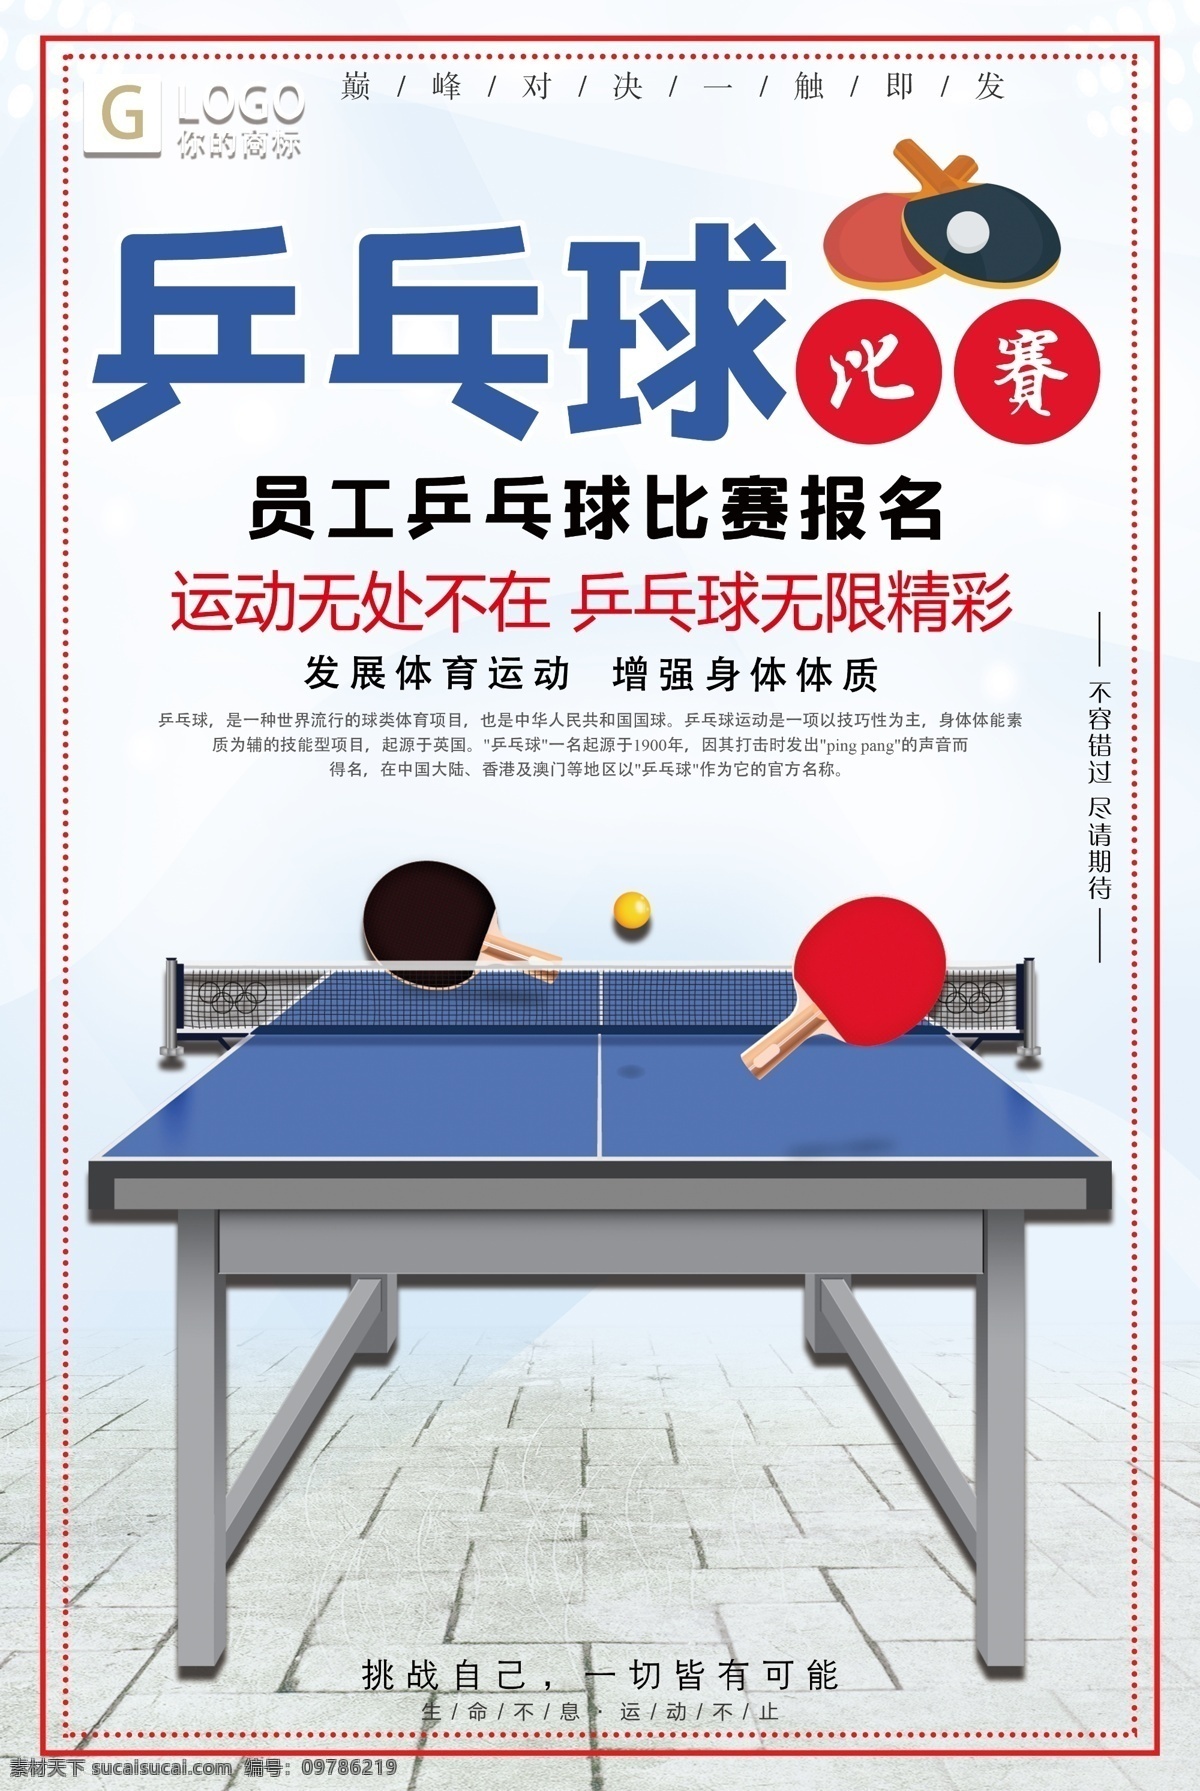 大气 员工 乒乓球 比赛报名 创意 宣传海报 乒乓 创意设计 简洁 设计大气 乒乓球设计 设计创意 创意宣传 大气设计